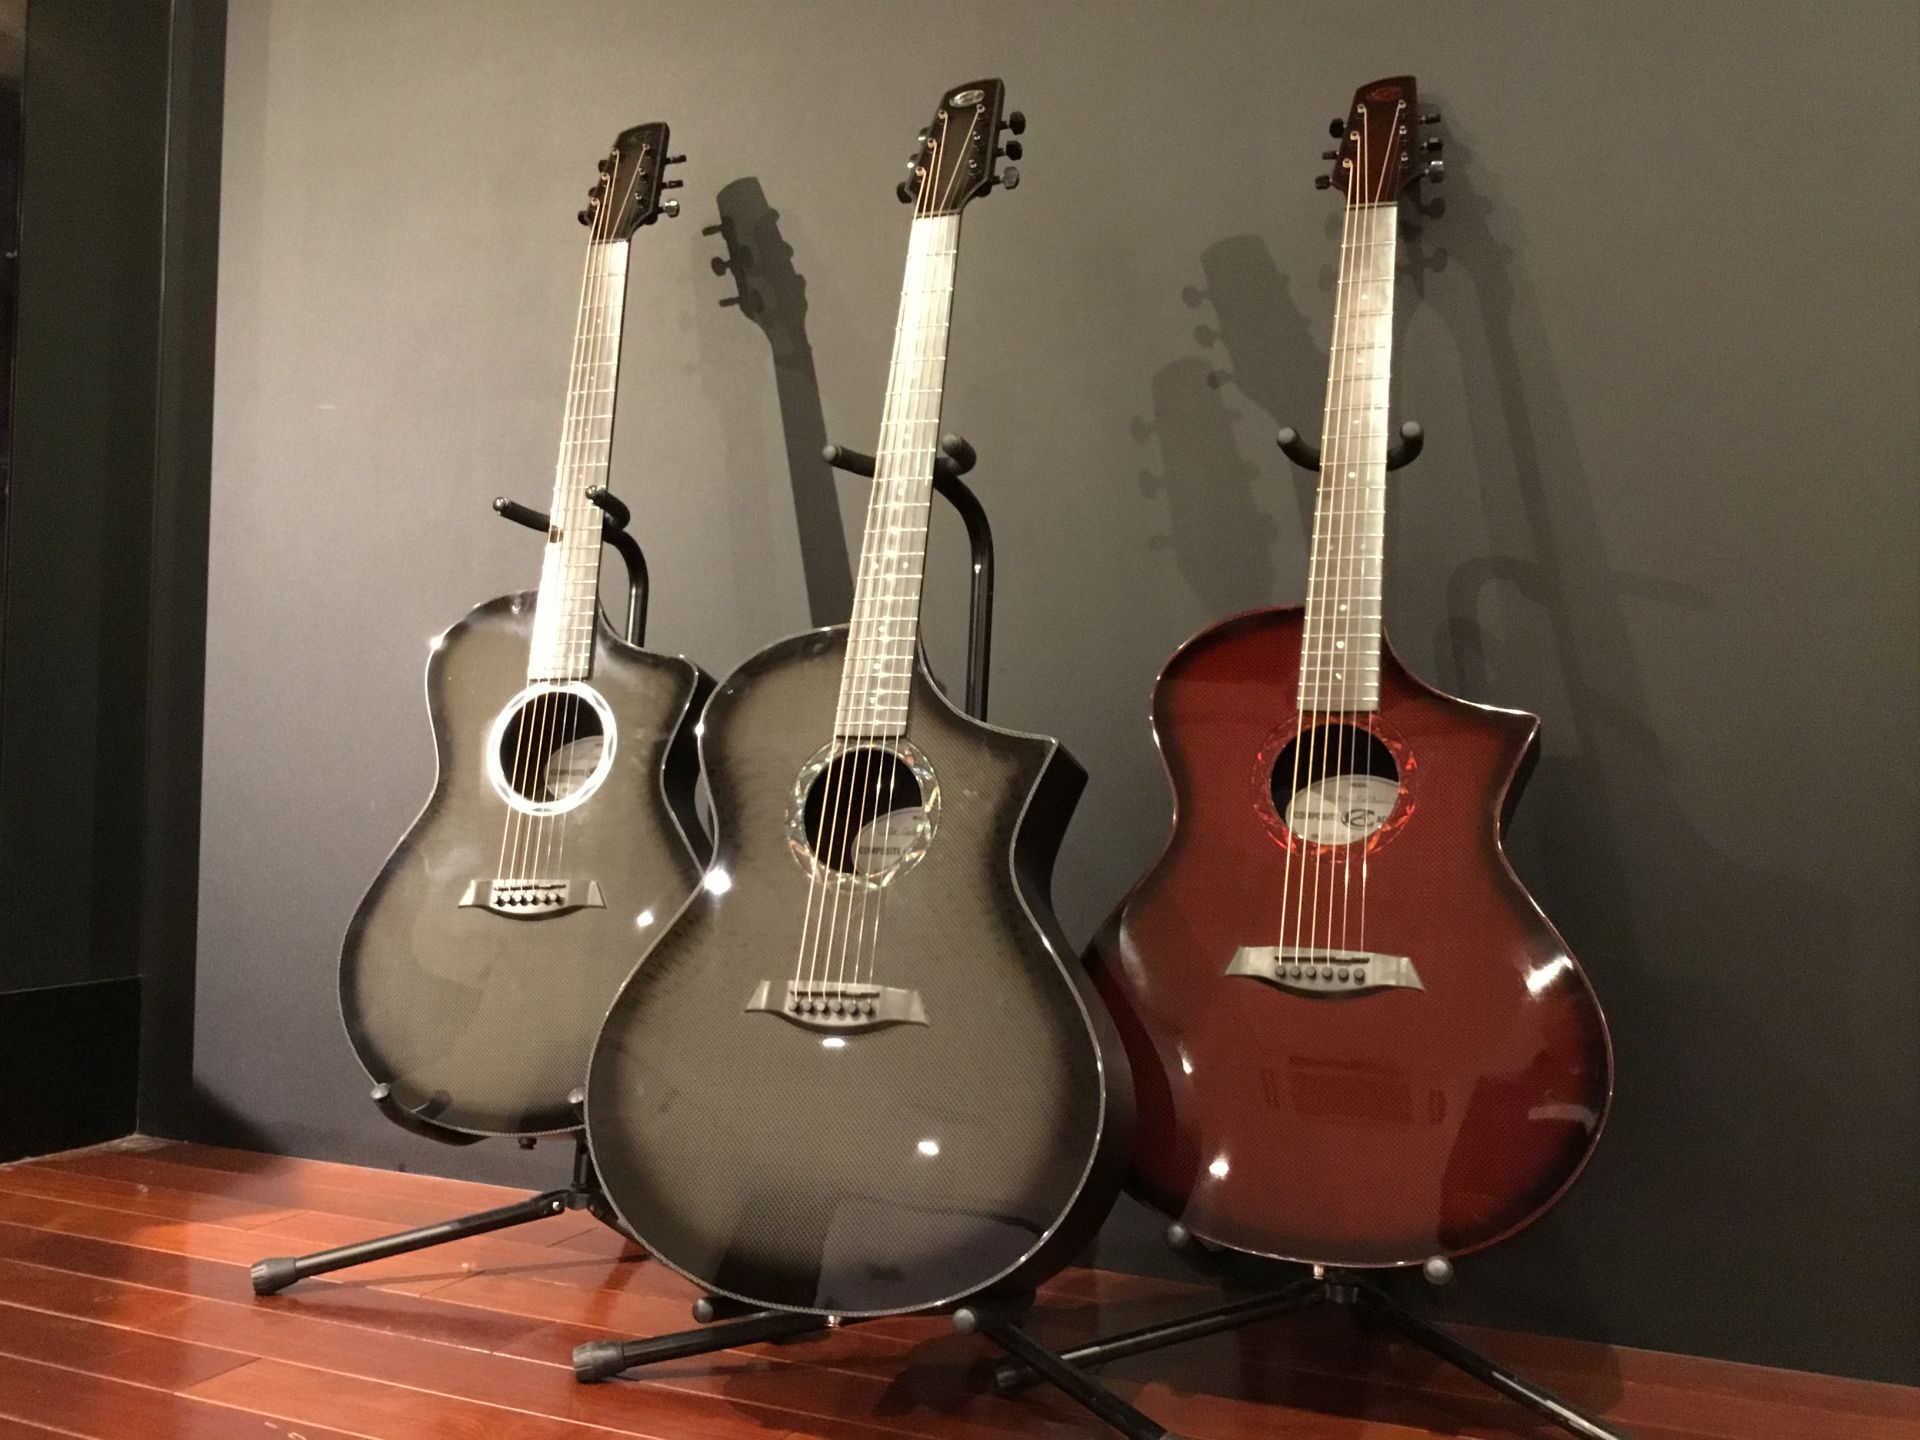 *Composite Acoustics Guitarが初入荷！日本初モデルも！ ボディ、ネックをカーボン製にし、圧倒的な耐久性を実現したエレアコギターが島村楽器川崎ルフロン店に入荷しました！野外で、炎天下で氷点下でも、場所を気にせずパフォーマンス出来るギターを体感ください。]][!※こちらの商品は […]